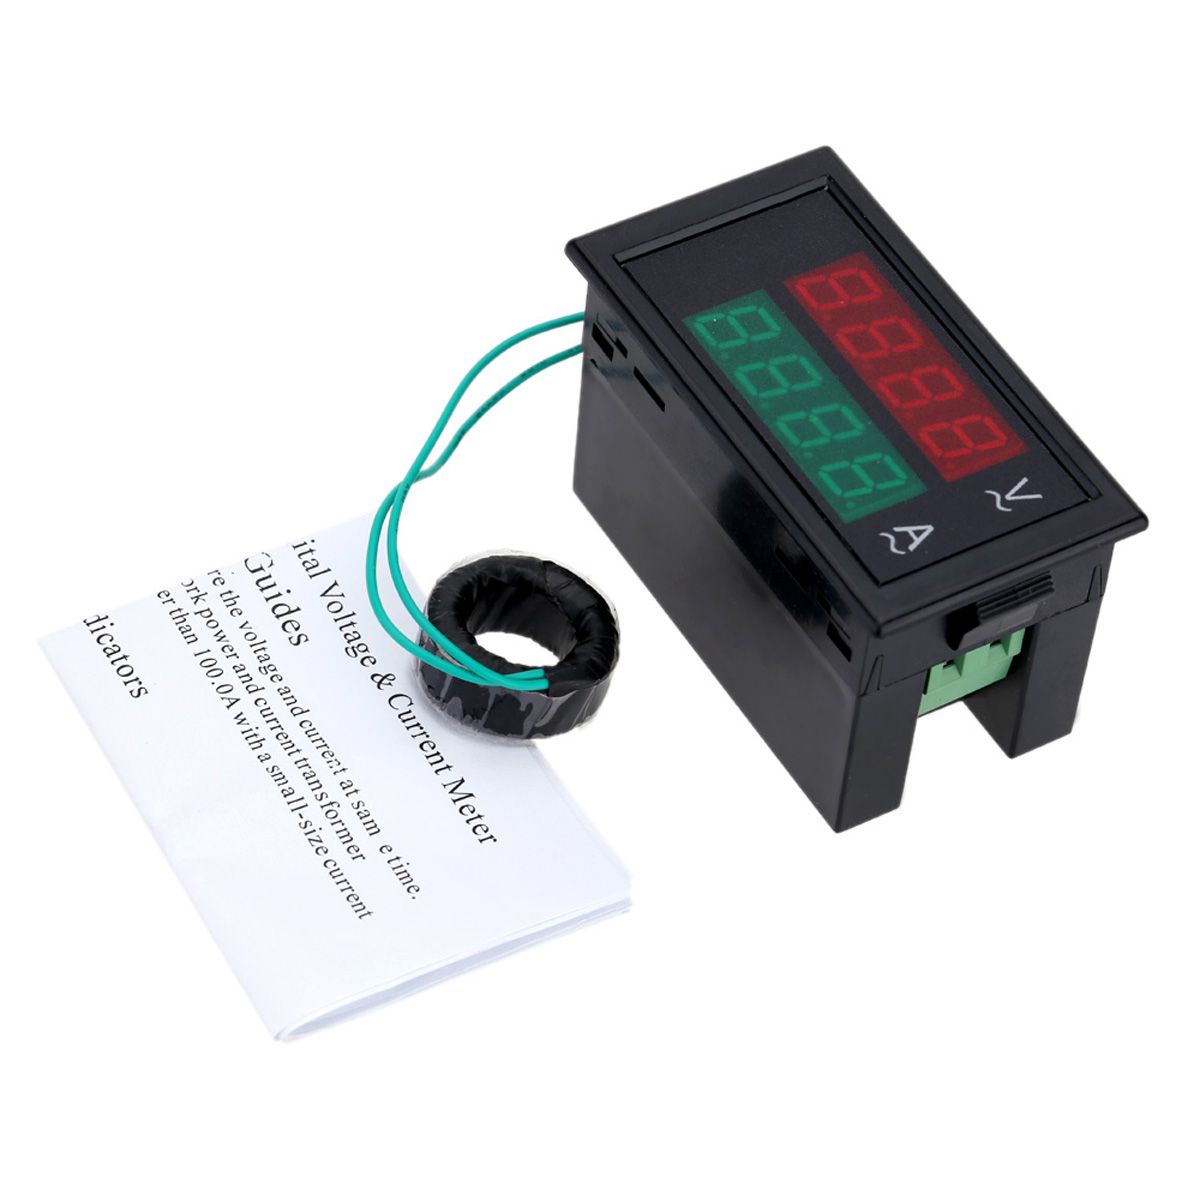 DL69-2042-Dual-AC-Digital-Ammeter-Voltmeter-LCD-Panel-AmpVolt-Meter-With-Back-Case-1443870